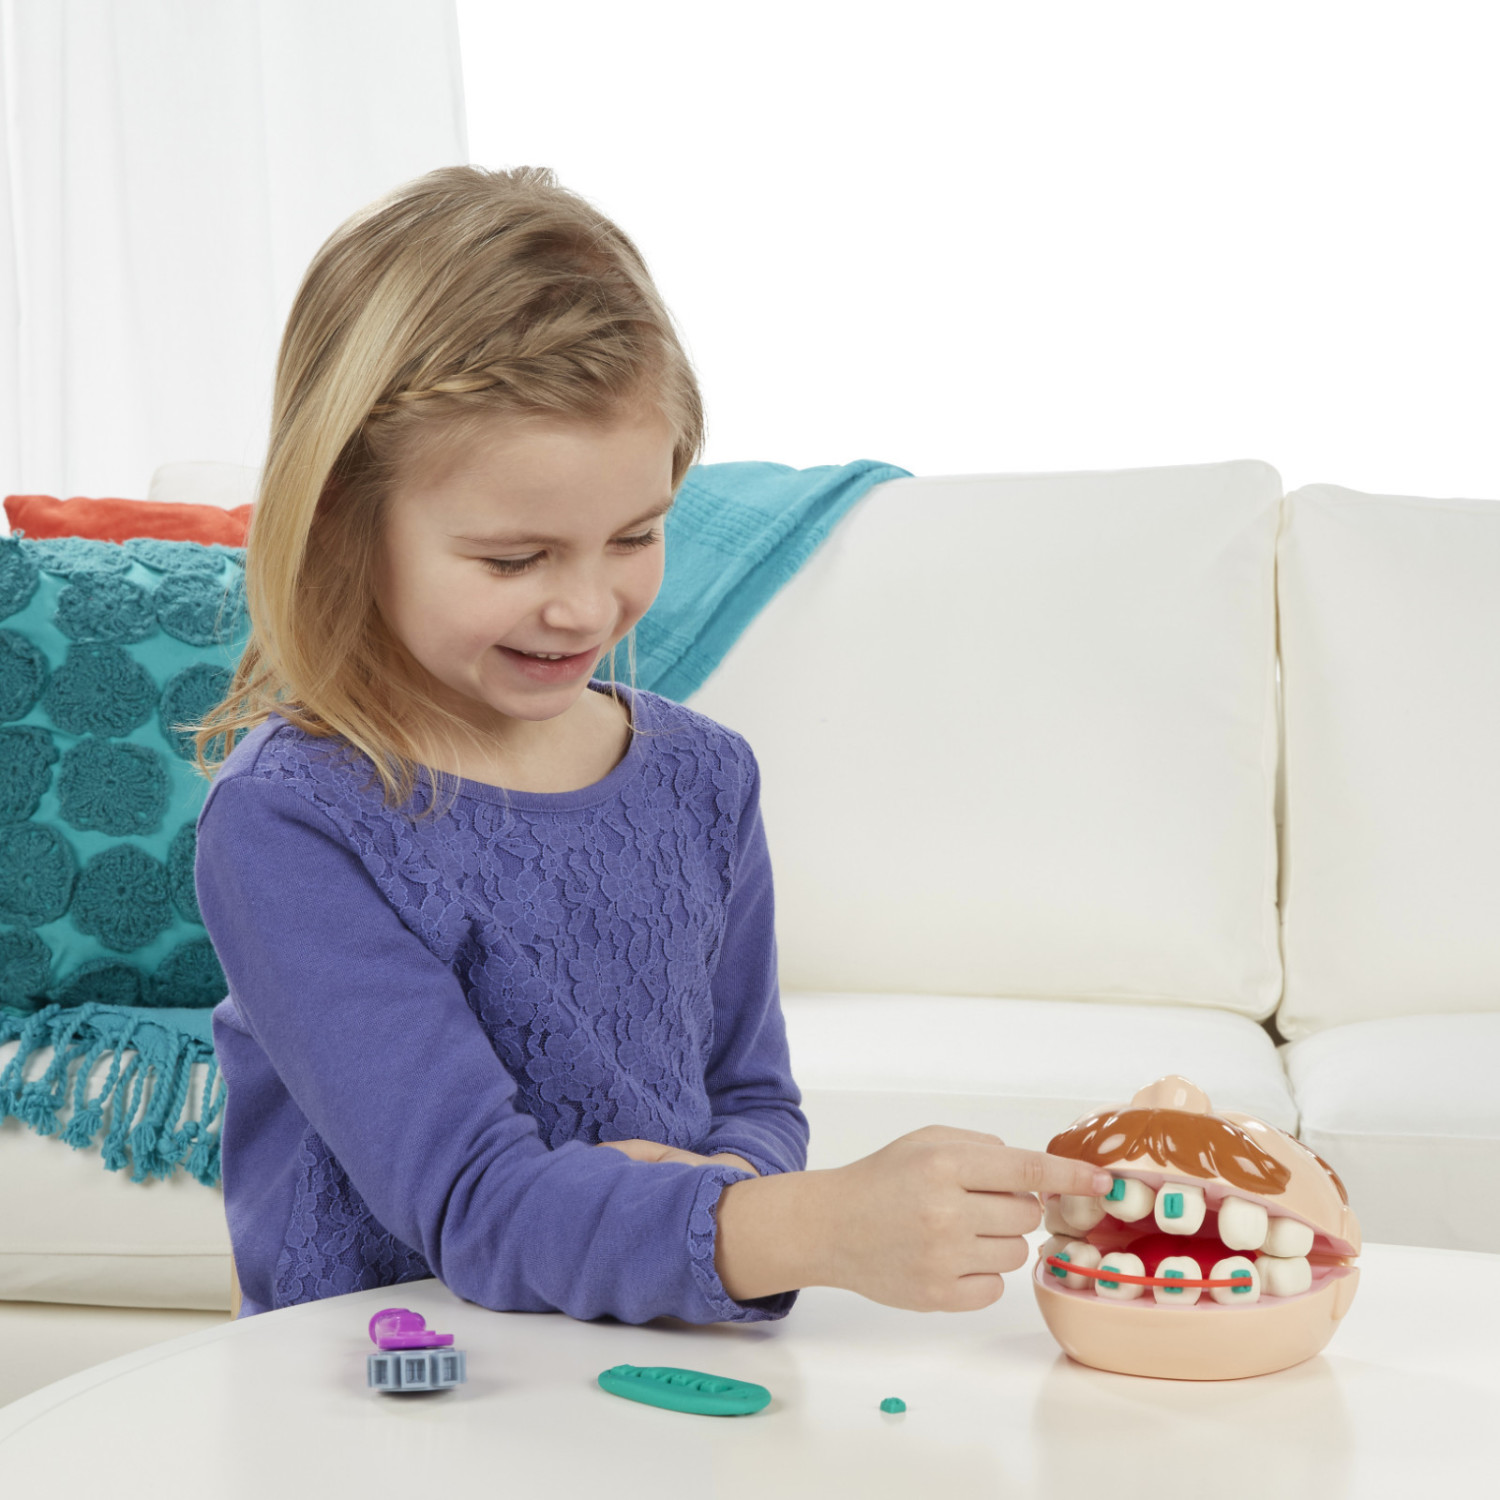 Cabinet Dentaire pour Enfants pack pâte à modeler Play-Doh –